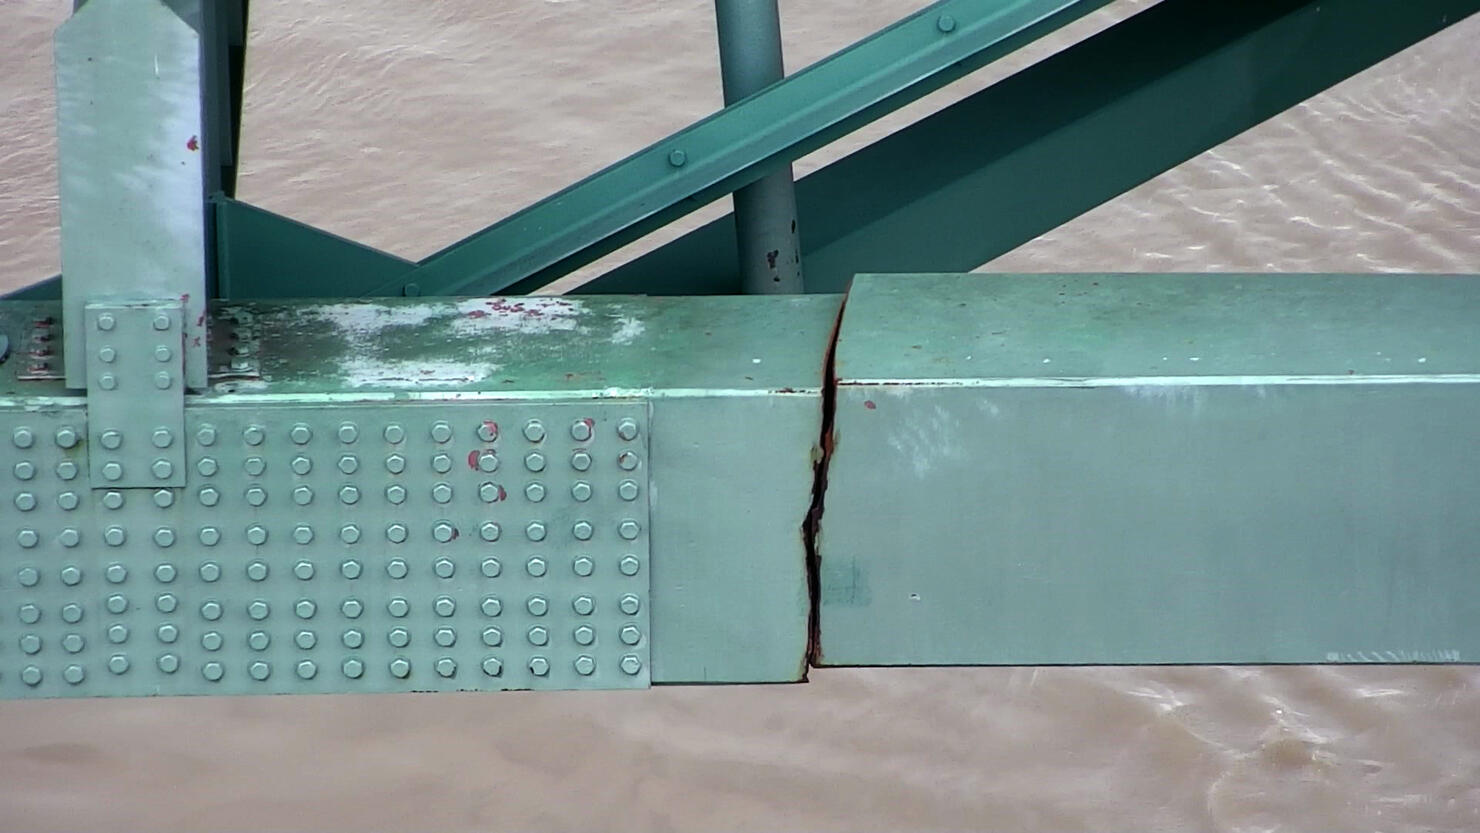 Memphis Bridge Closed After Inspectors Find Crack